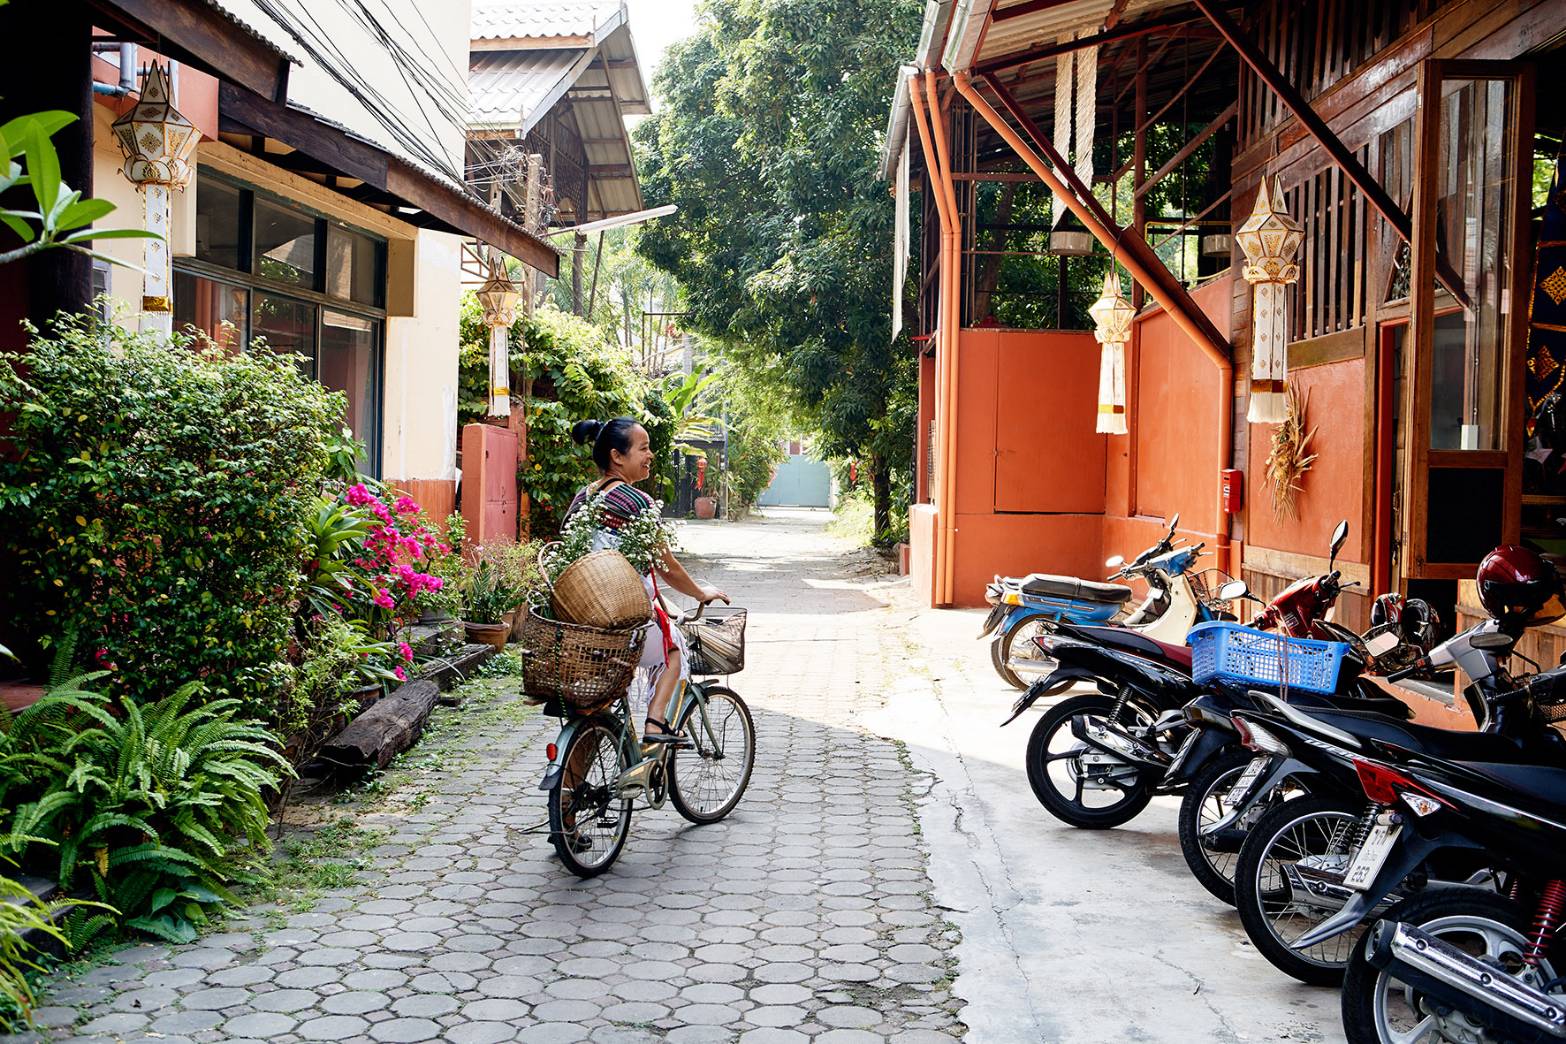 นักท่องเที่ยวต่างชาติเสิร์ชหาที่พัก Airbnb ในไทยพุ่งเท่าตัว รับเปิดประเทศ – ท่องเที่ยว